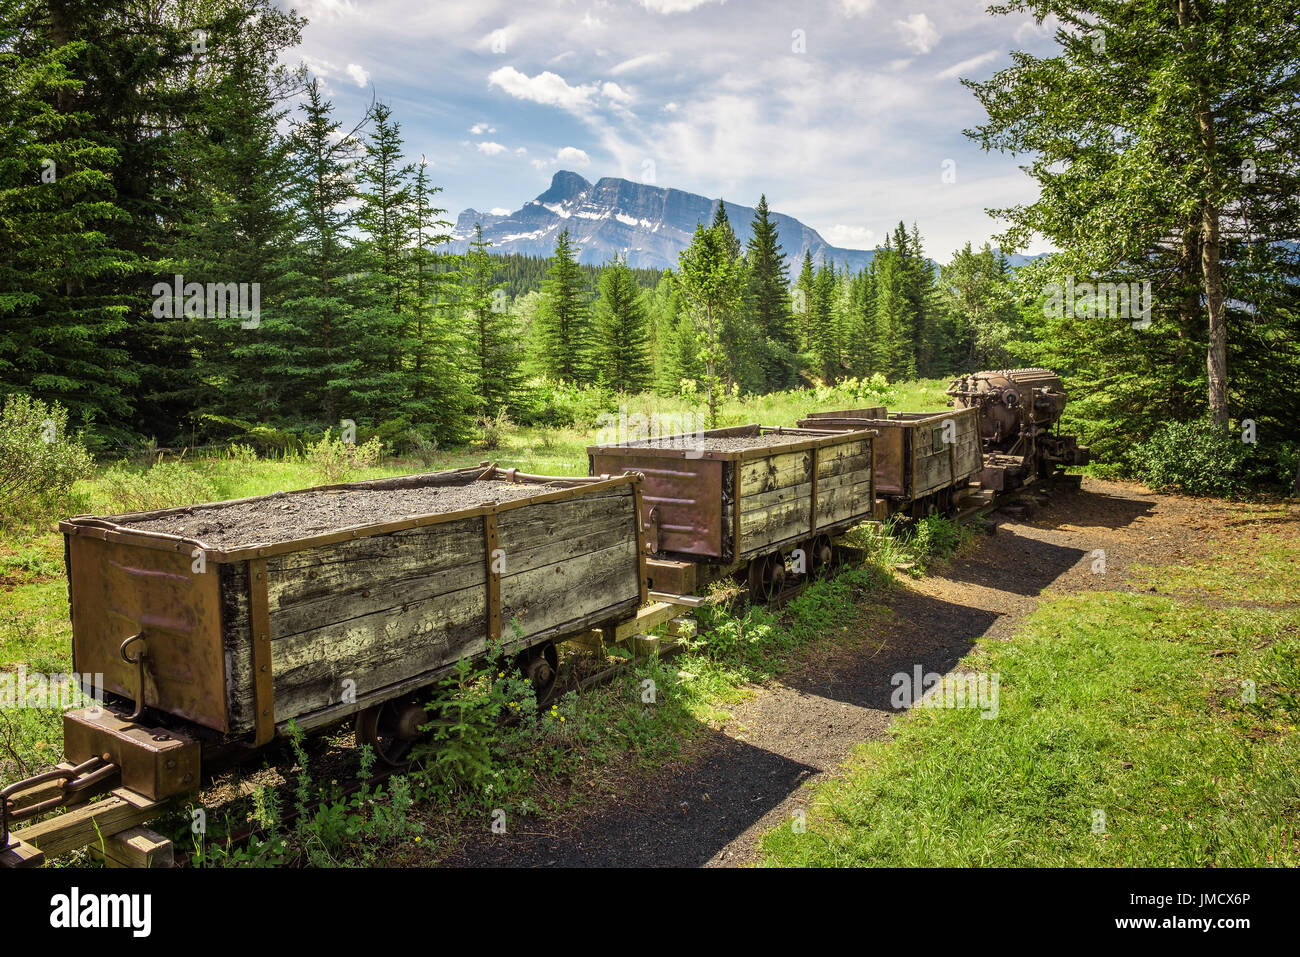 Storica miniera di carbone treno nella città fantasma di Bankhead con Mt. Rundle in background si trova nel Parco Nazionale di Banff, Alberta, Canada. Foto Stock